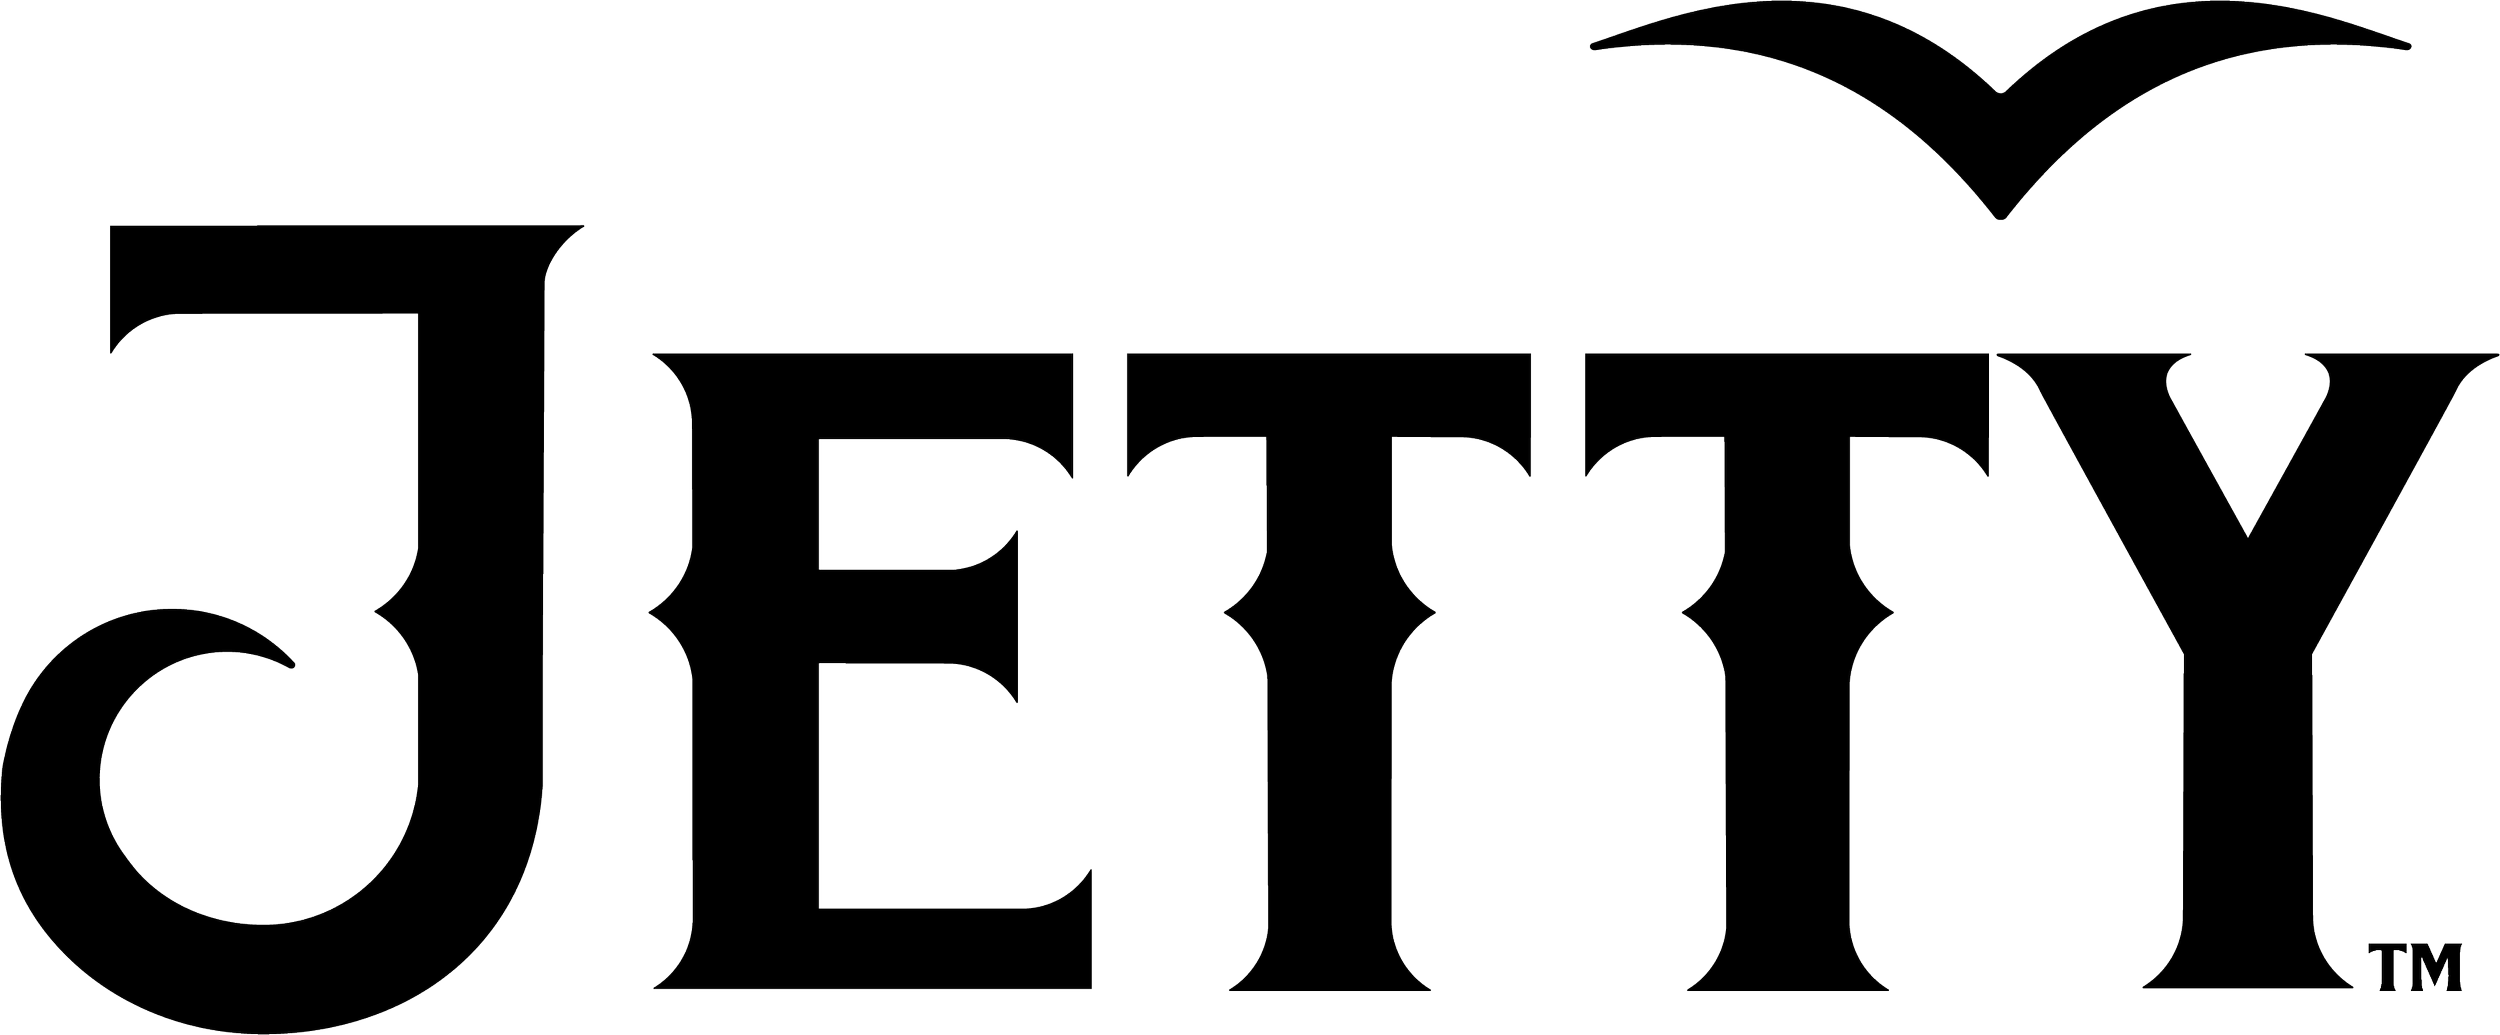 Jetty-Logo-Black.png